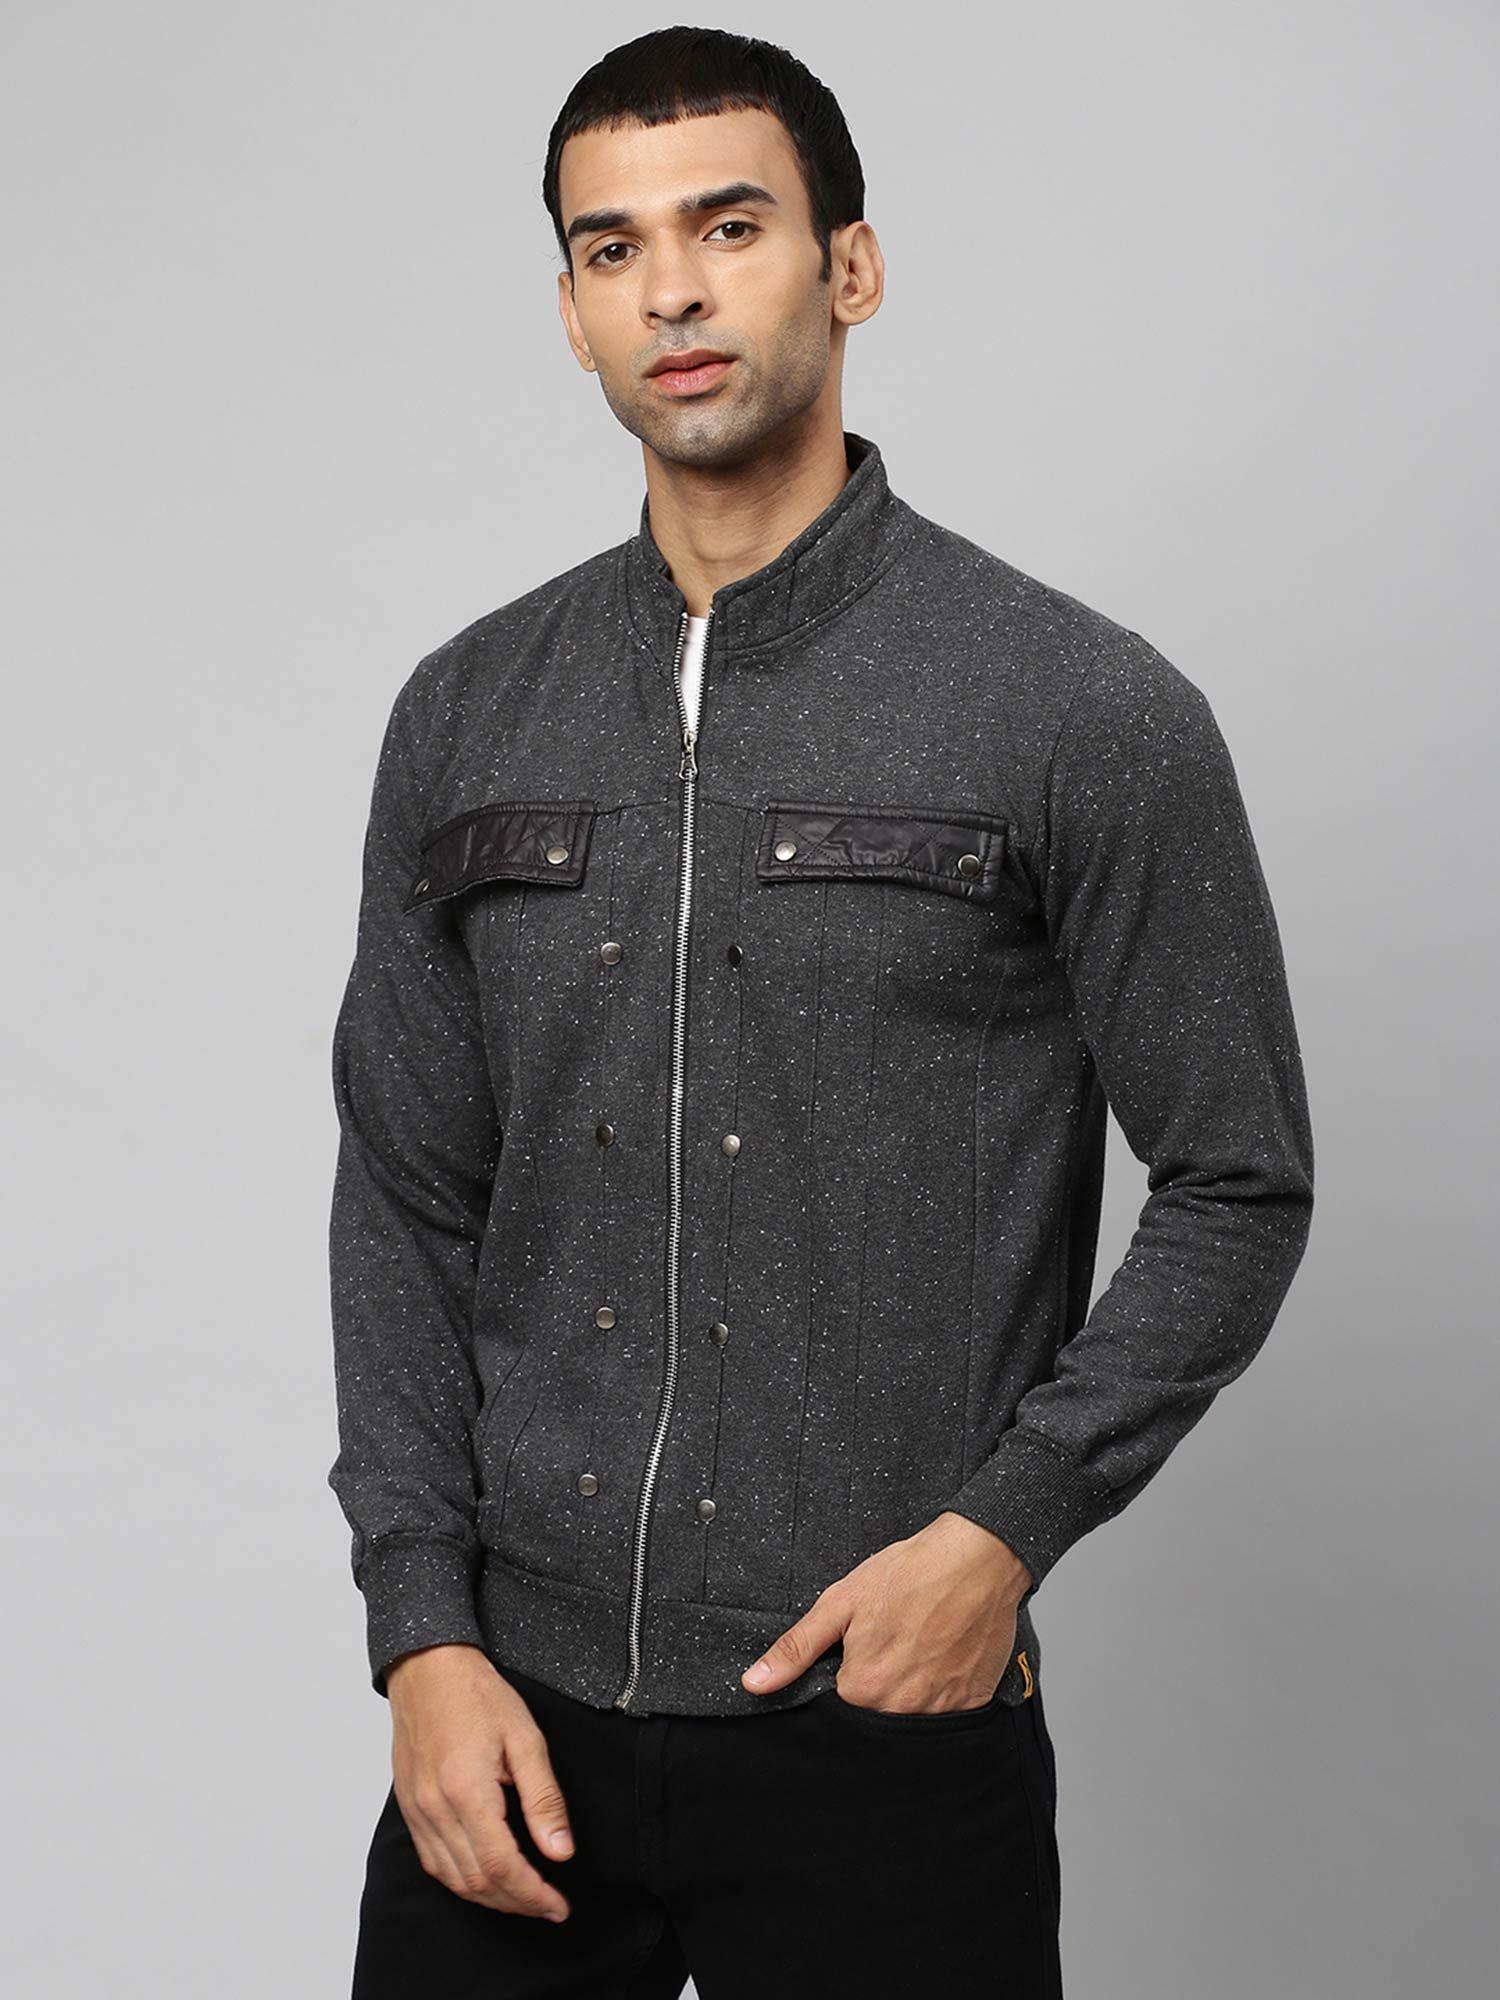 men-solid-sleeveless-stylish-casual-jacket